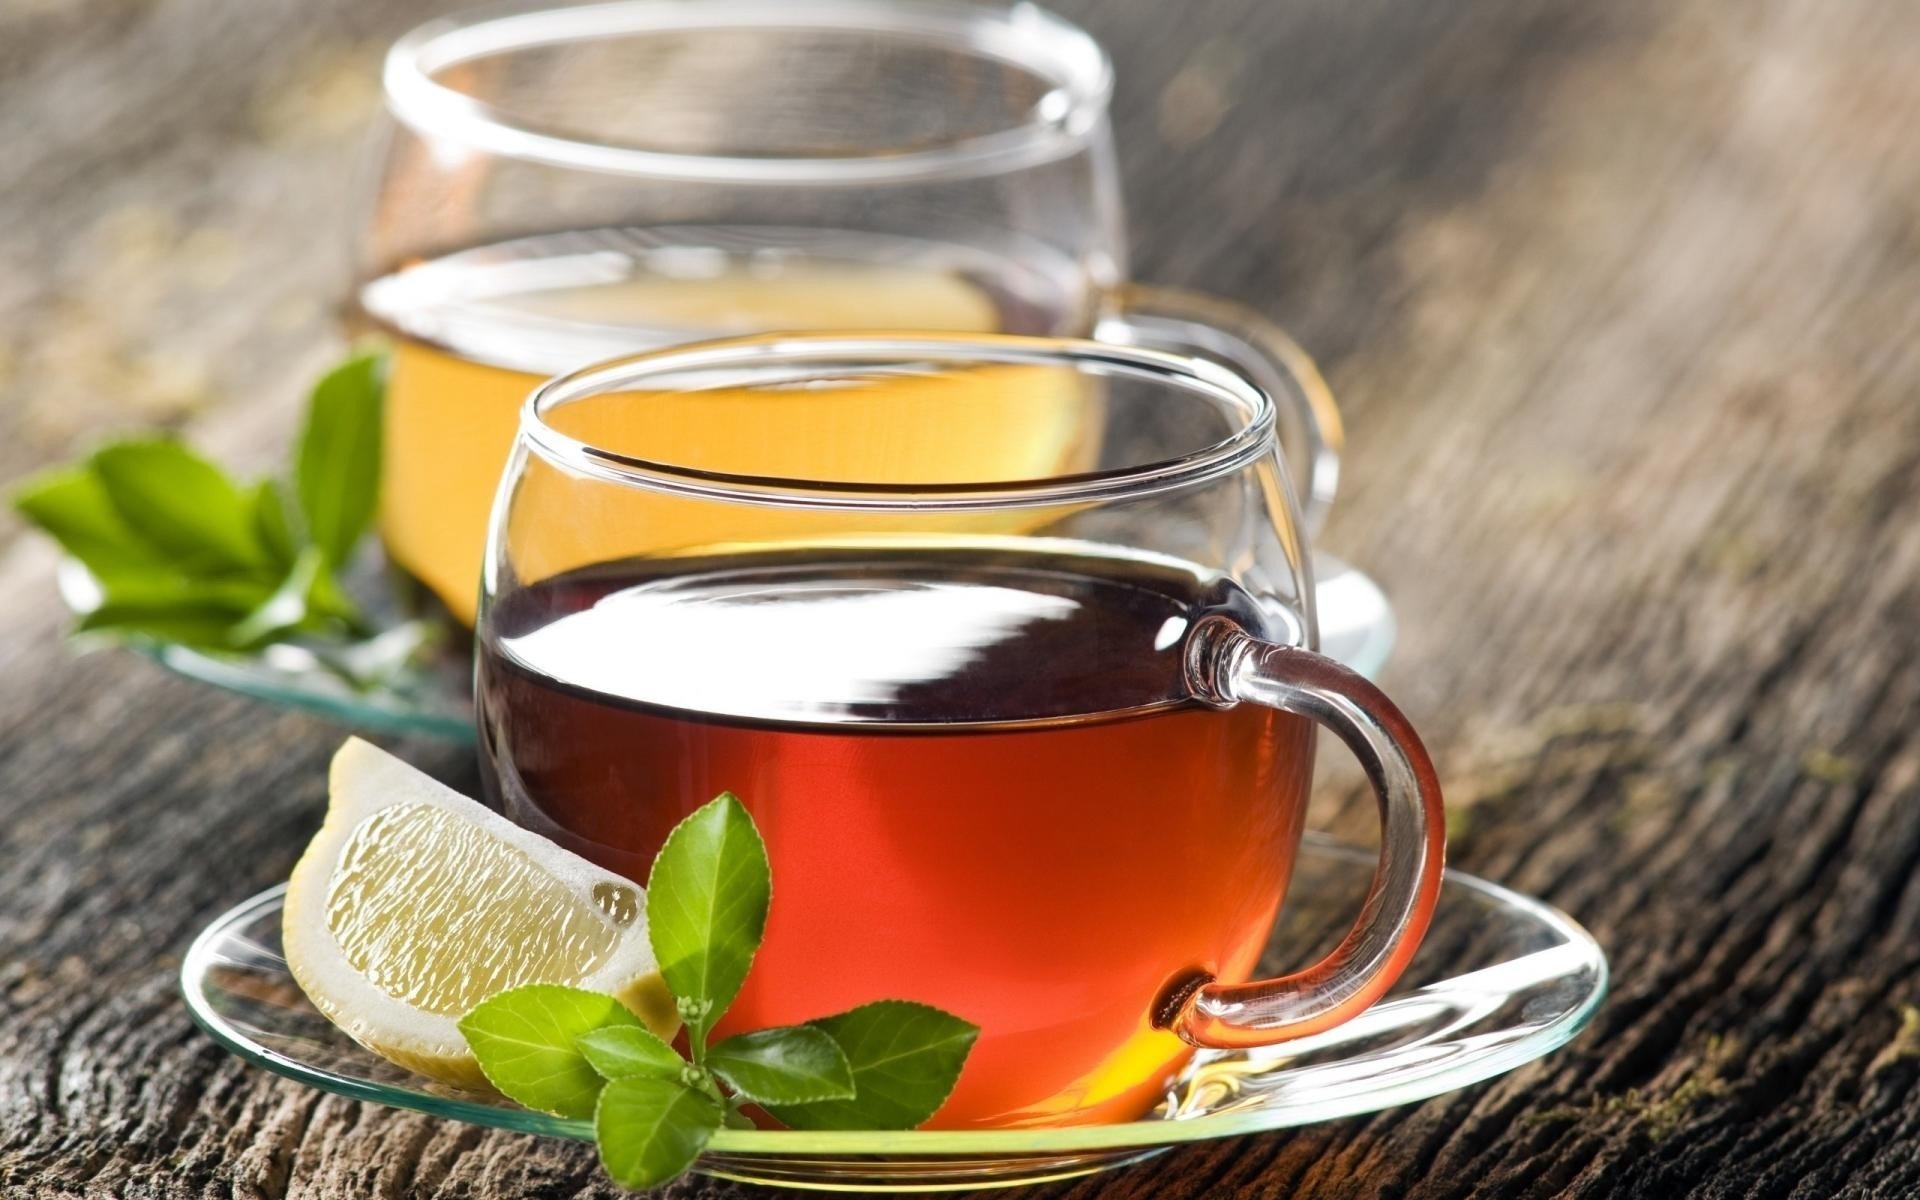 طريقة تحضير شاي الأعشاب المعجزة للقضاء على السعال ونزلات البرد والإنفلونزا